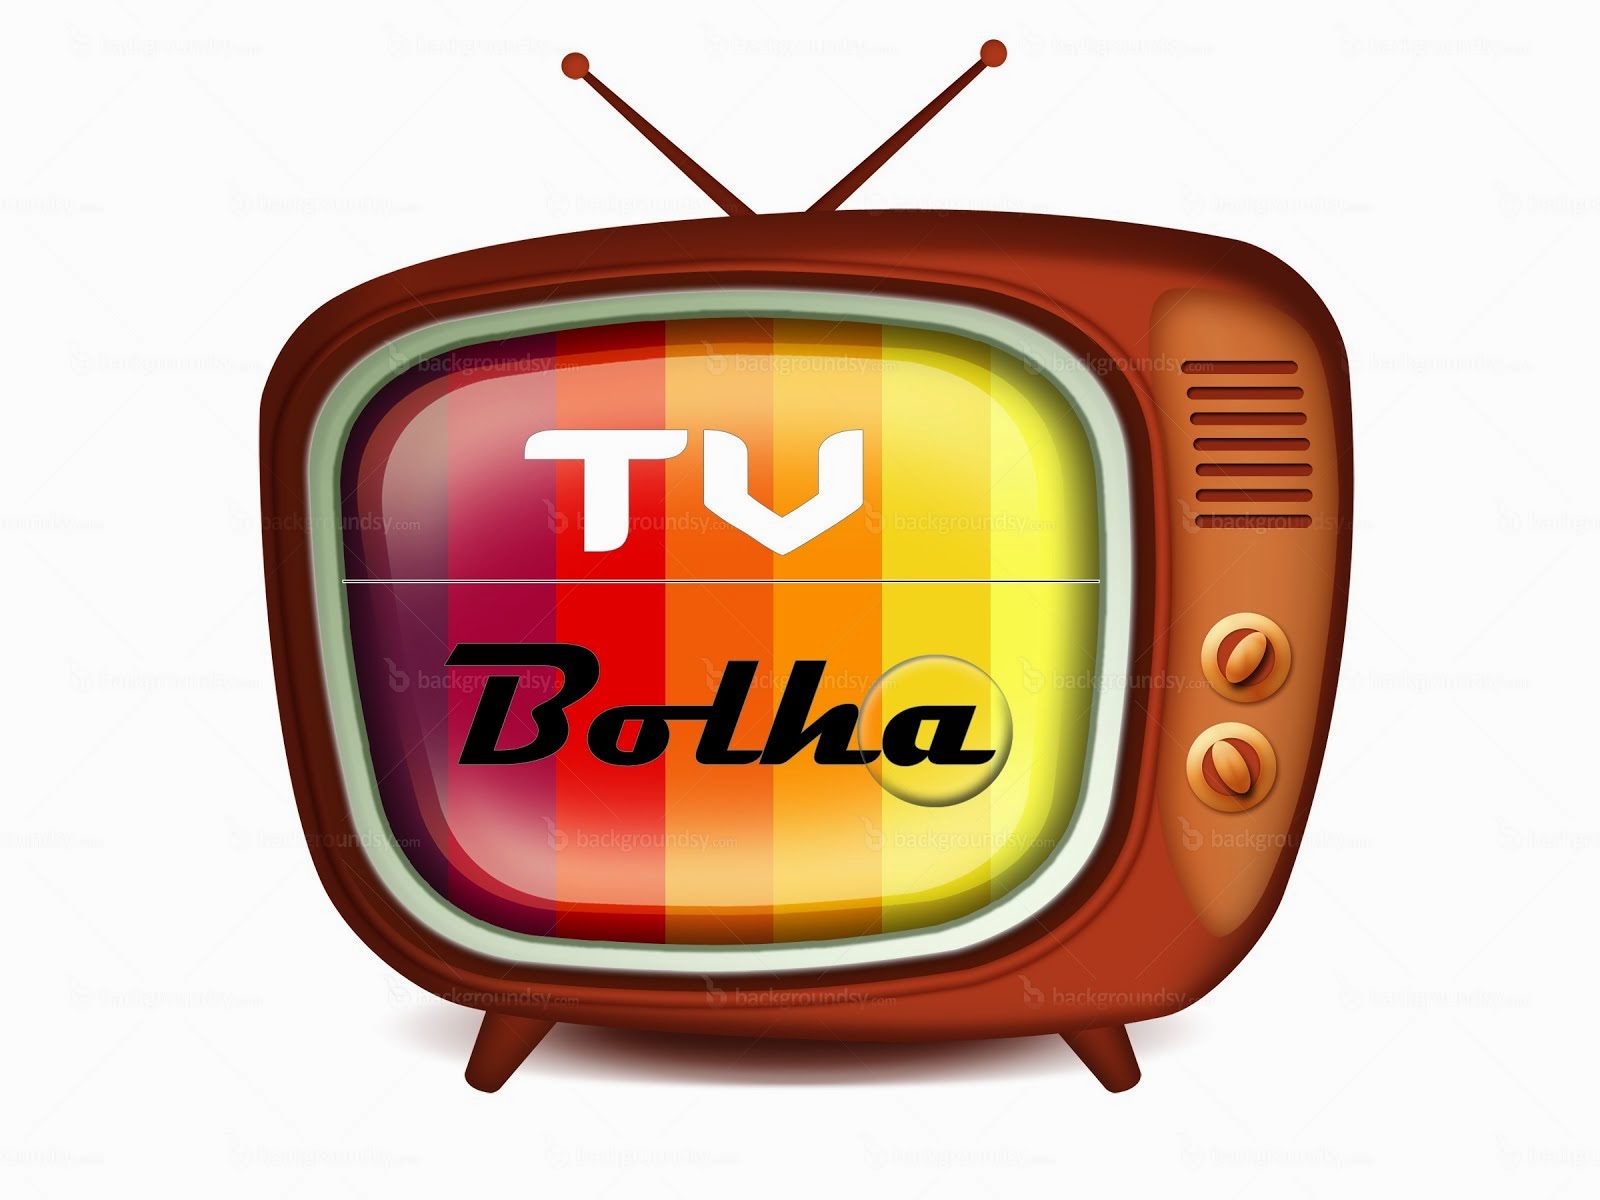 TV DO BOLHA